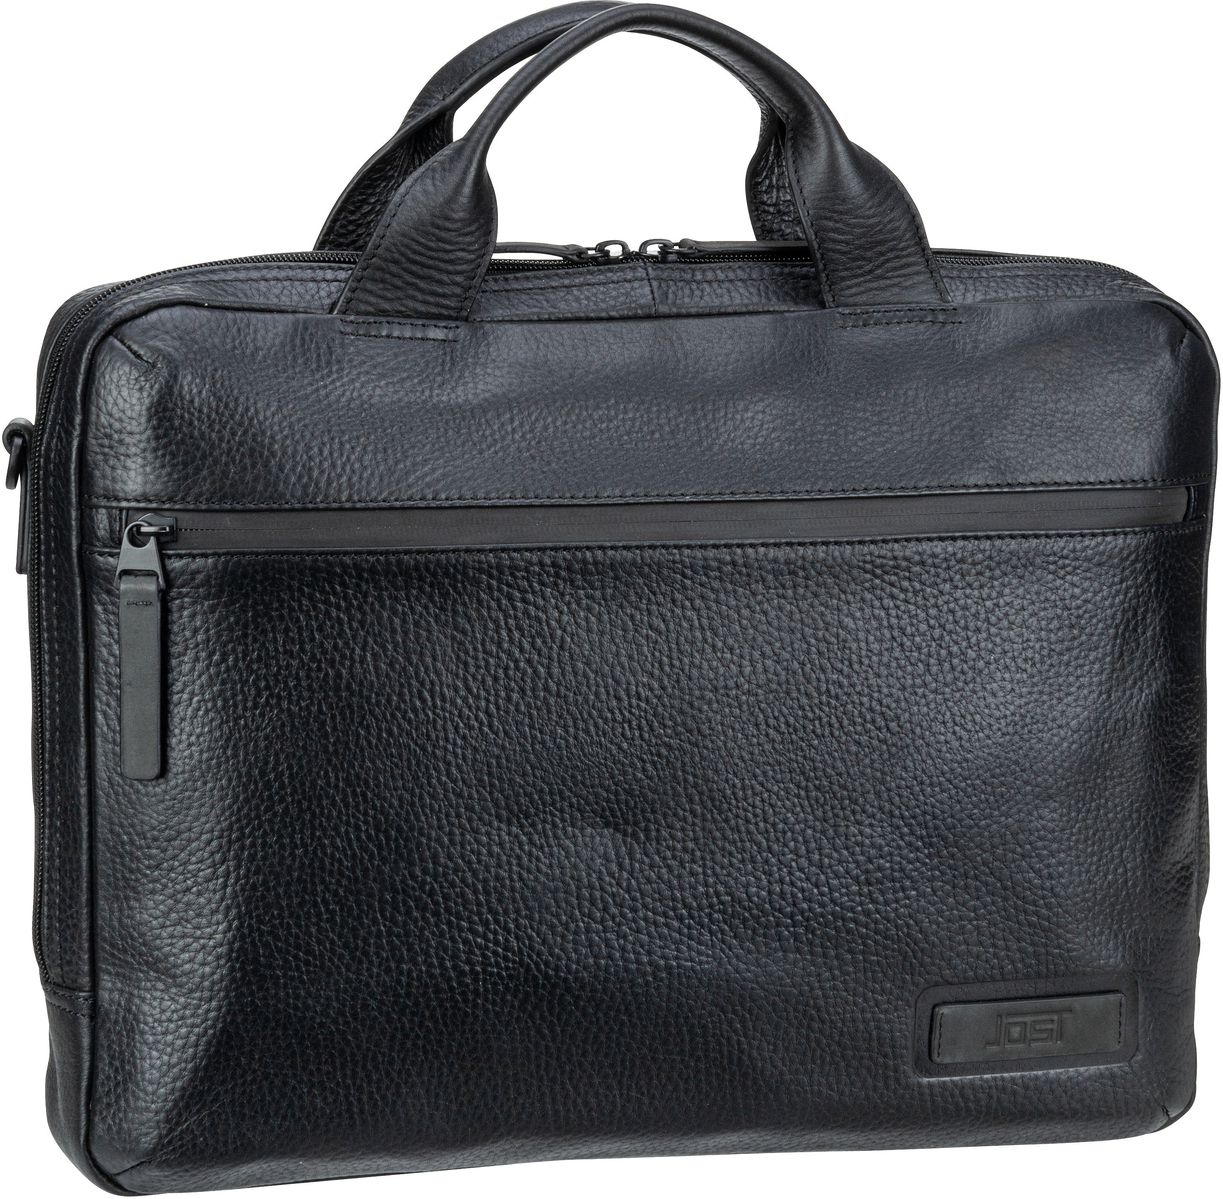 Jost Stockholm Business Bag S 1 Comp - Black